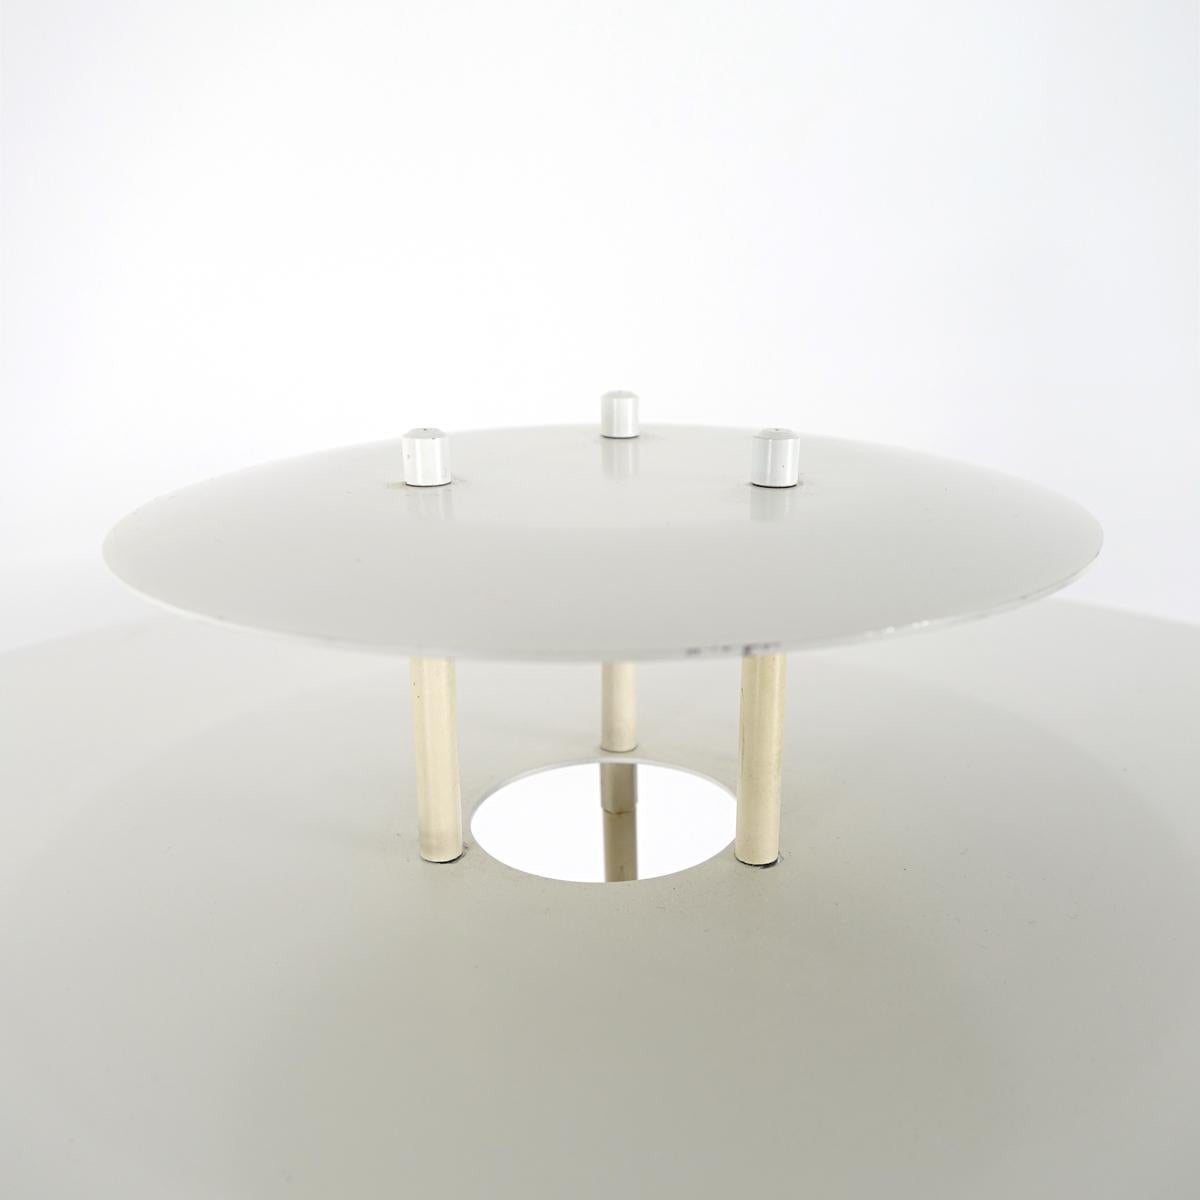 20th Century Mid-Century Modern White Steel Floor Lamp by Danish Maker Frandsen For Sale